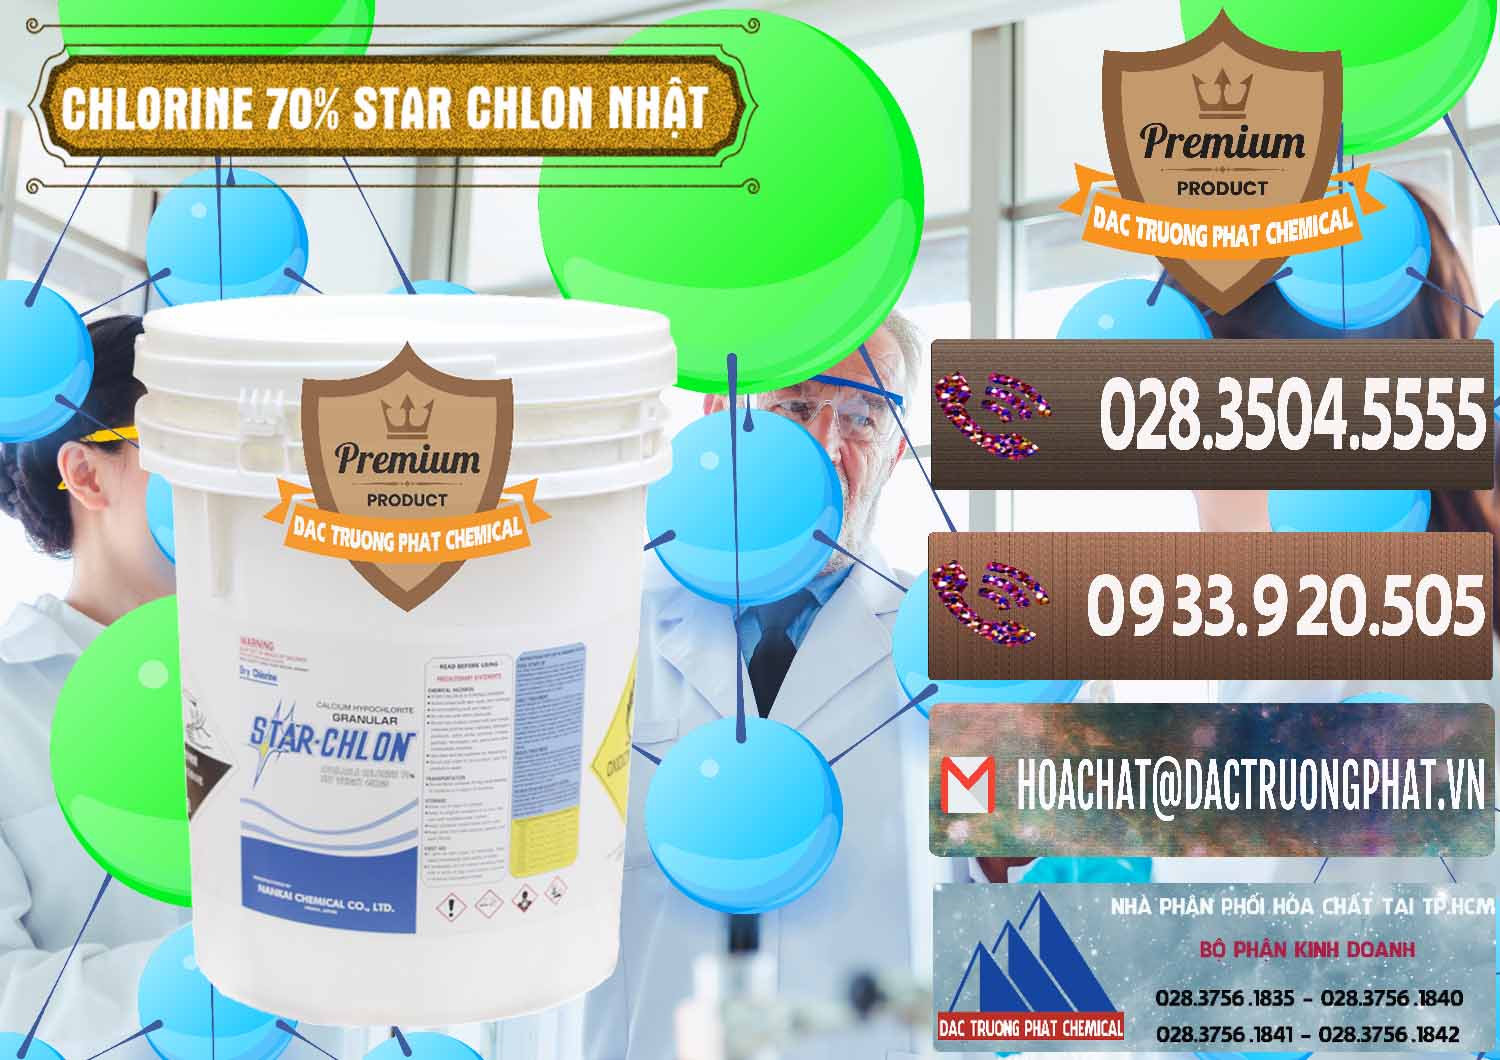 Nhà nhập khẩu và bán Clorin – Chlorine 70% Star Chlon Nhật Bản Japan - 0243 - Công ty chuyên kinh doanh và cung cấp hóa chất tại TP.HCM - hoachatviet.net